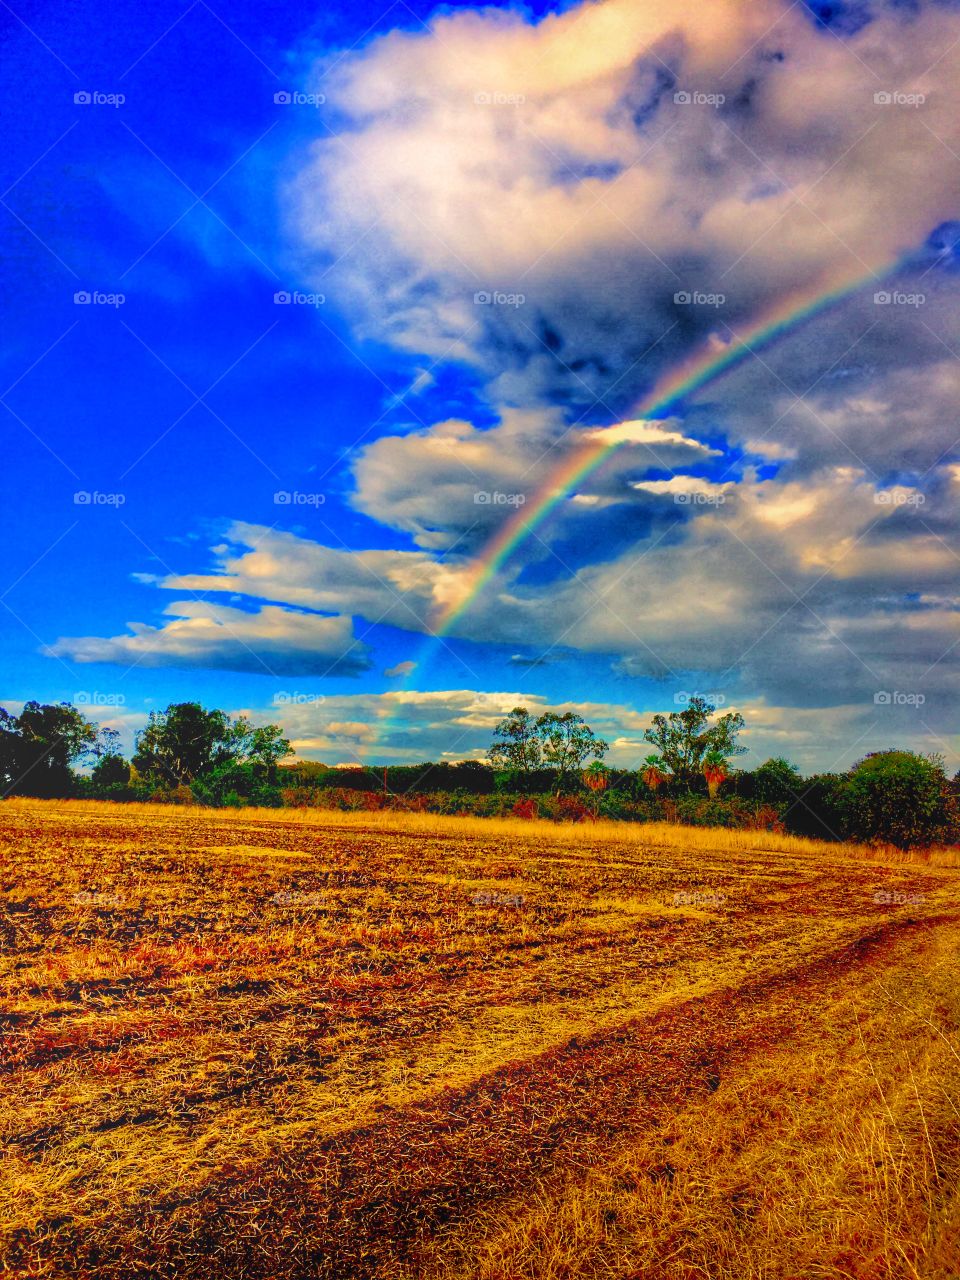 Rainbow over farmland. 